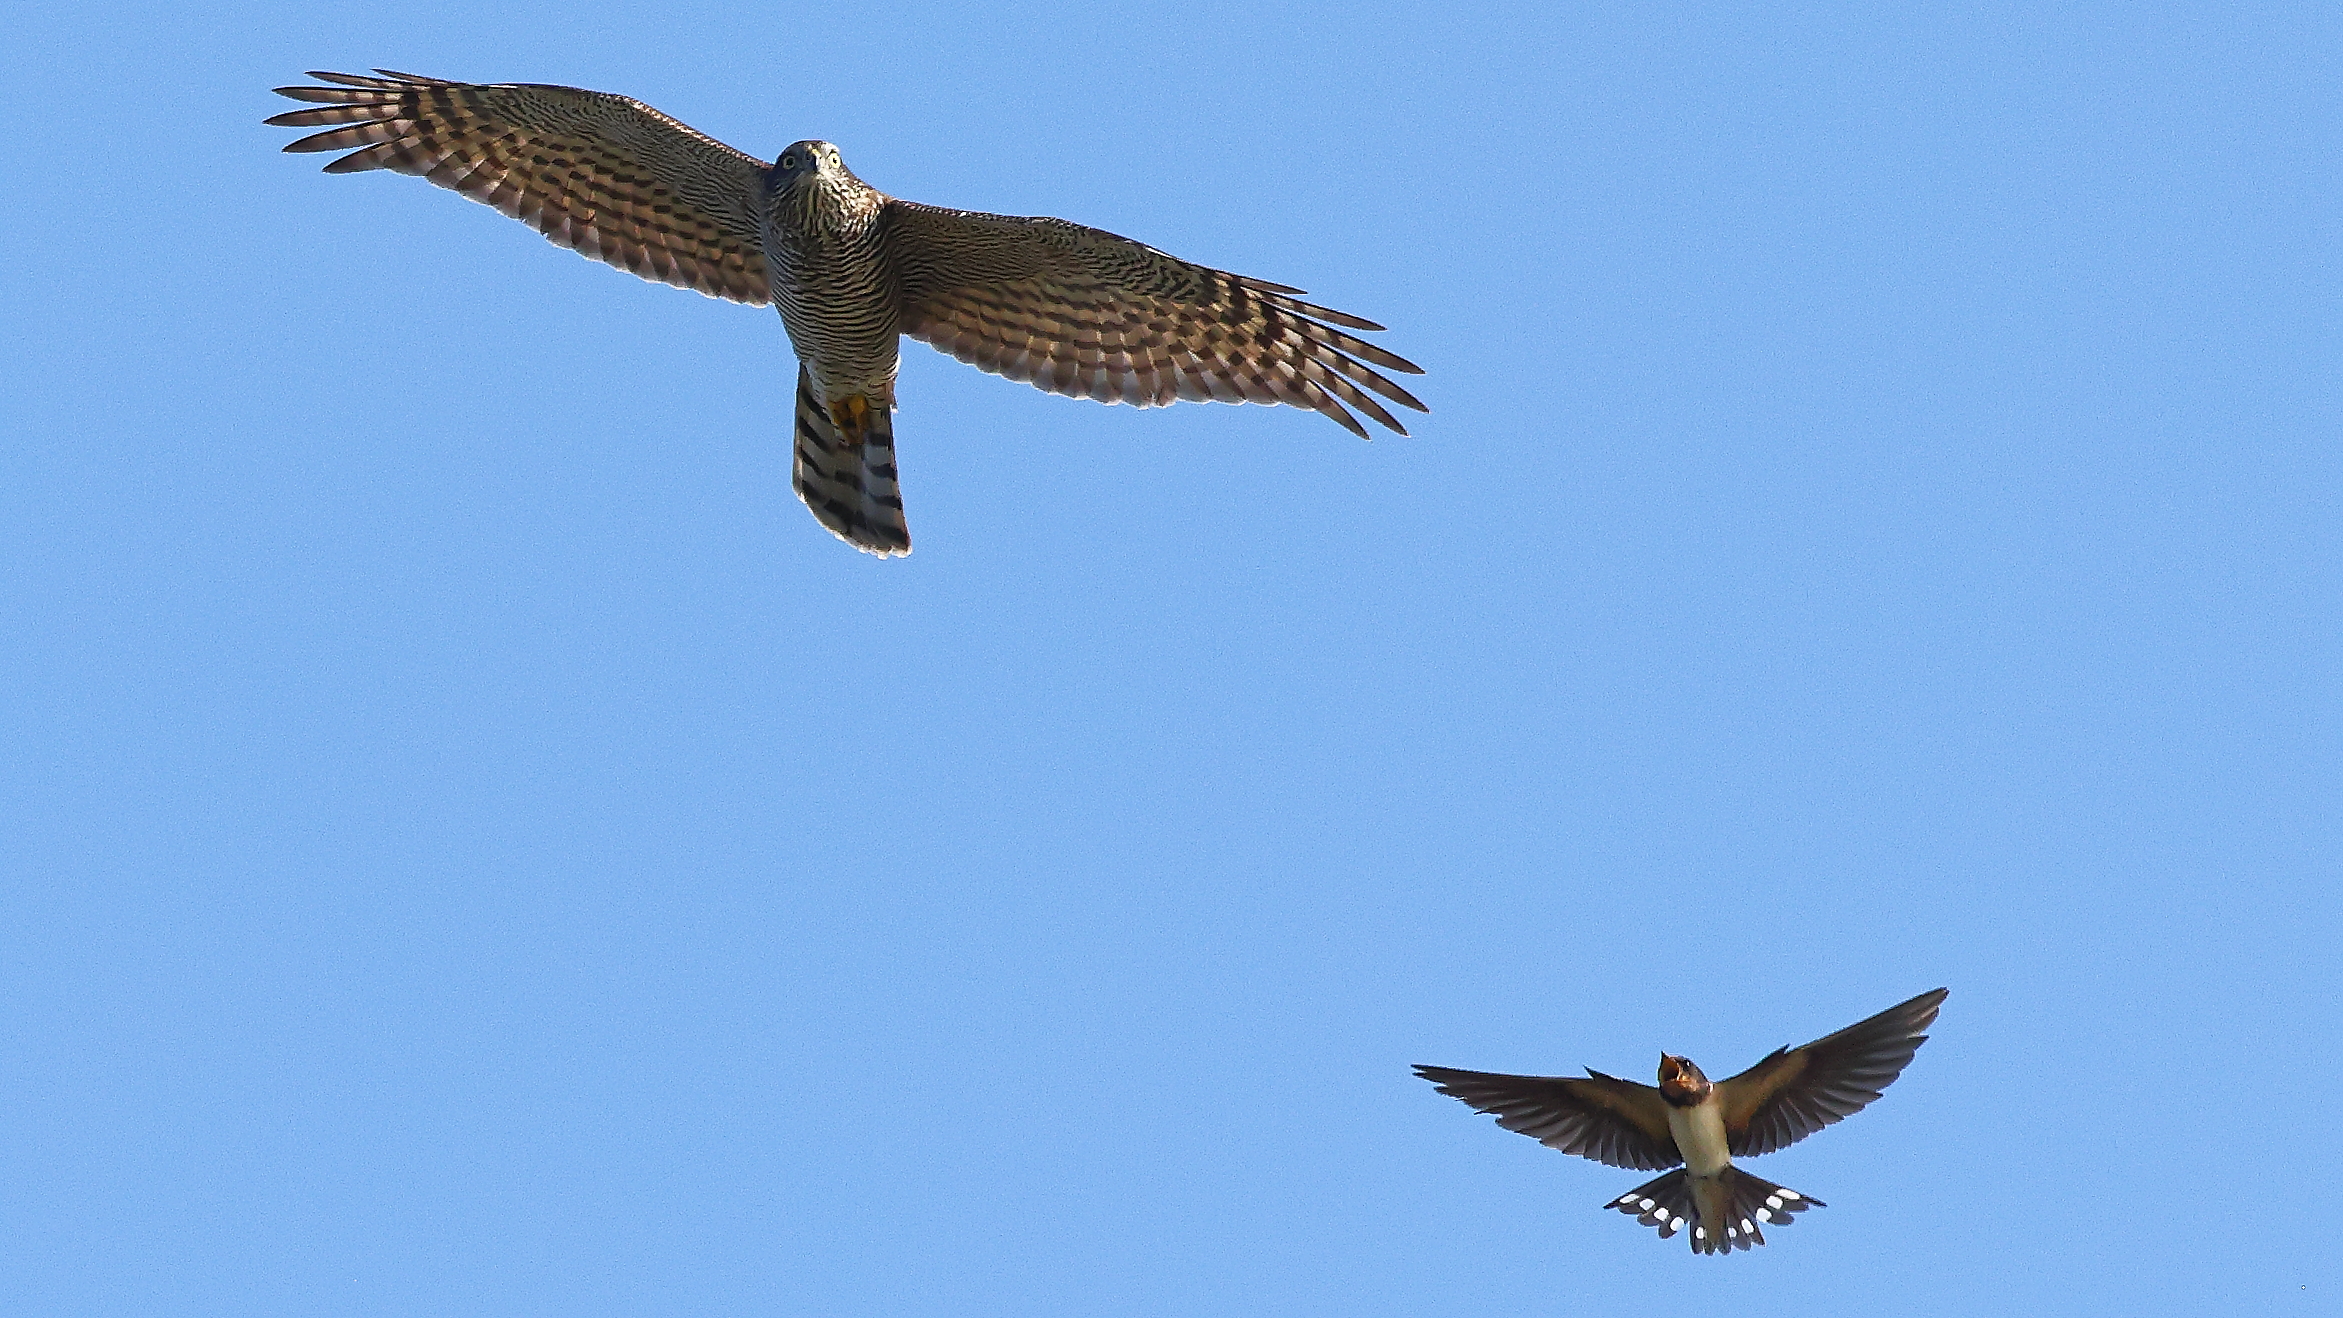 Sparrowhawk vs swallow...